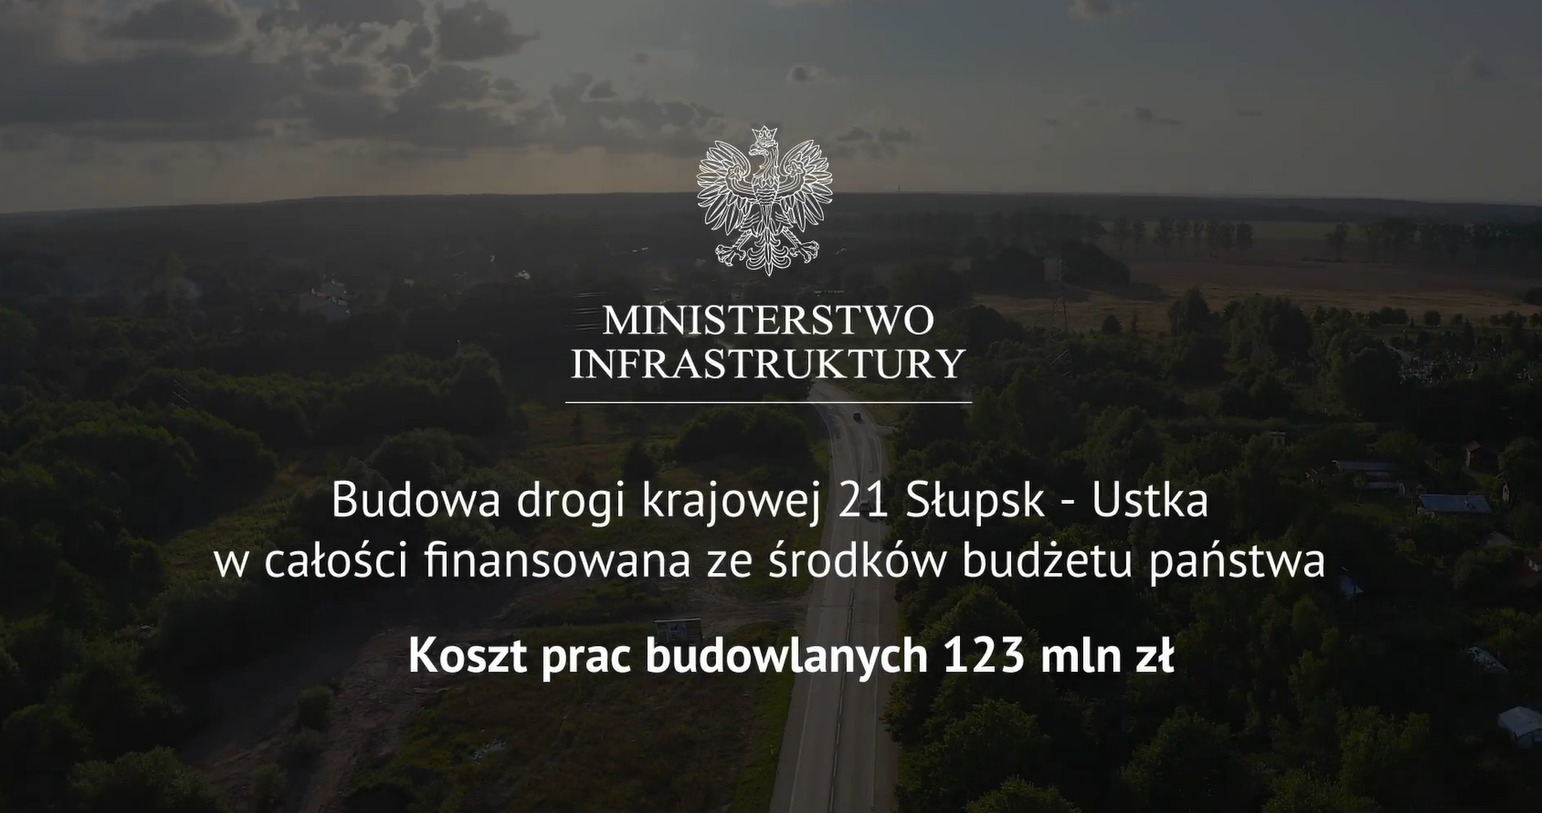 13 km nowej, bezpiecznej drogi między Ustką a Słupskiem staje się faktem. Na całym odcinku z ciągiem pieszo-rowerowym.